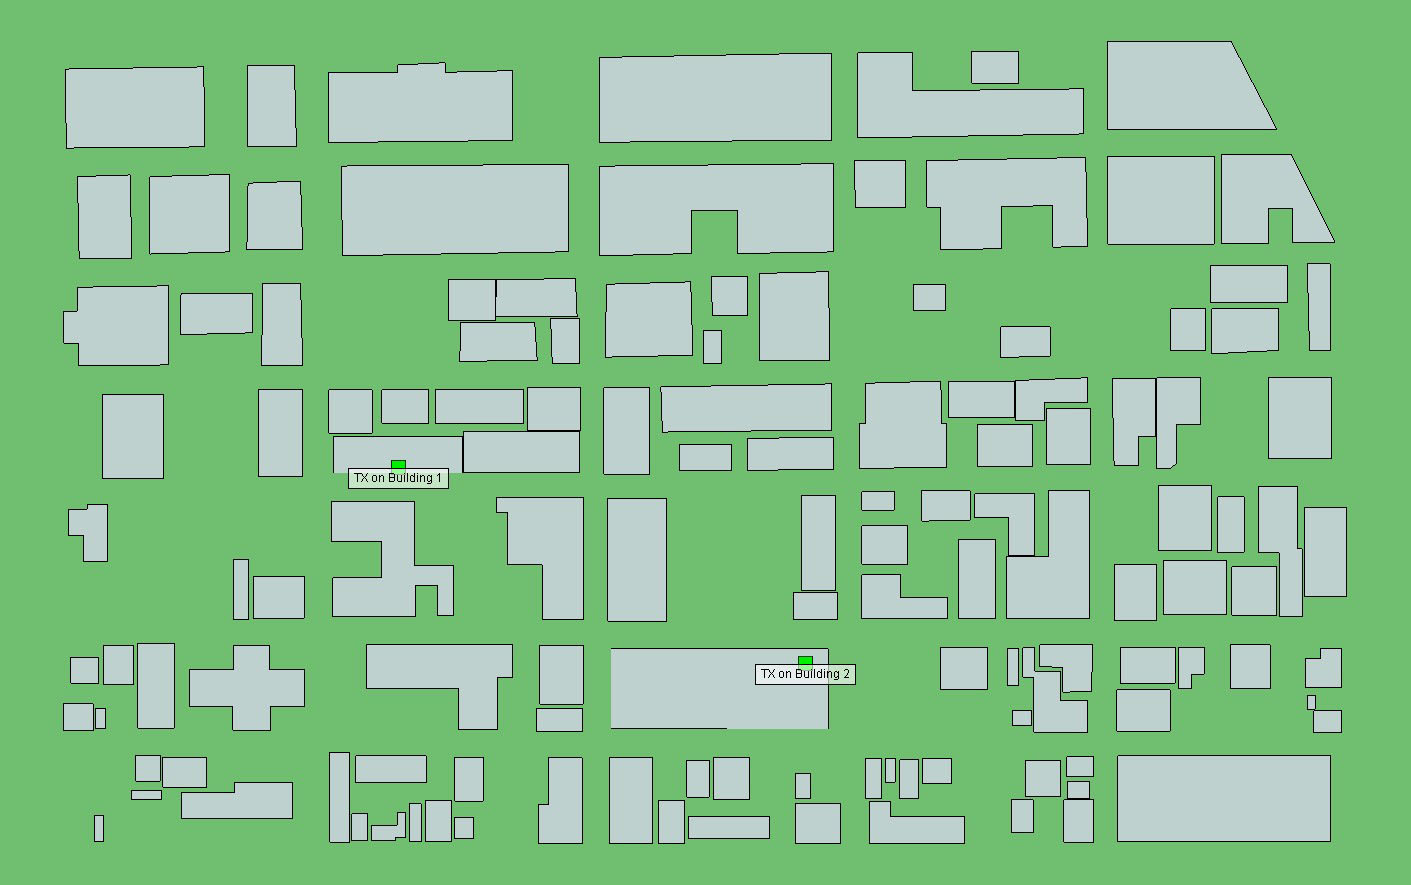 Abbildung 1Senderstandorte in einer städtischen Umgebung, dargestellt durch grüne Kästen.